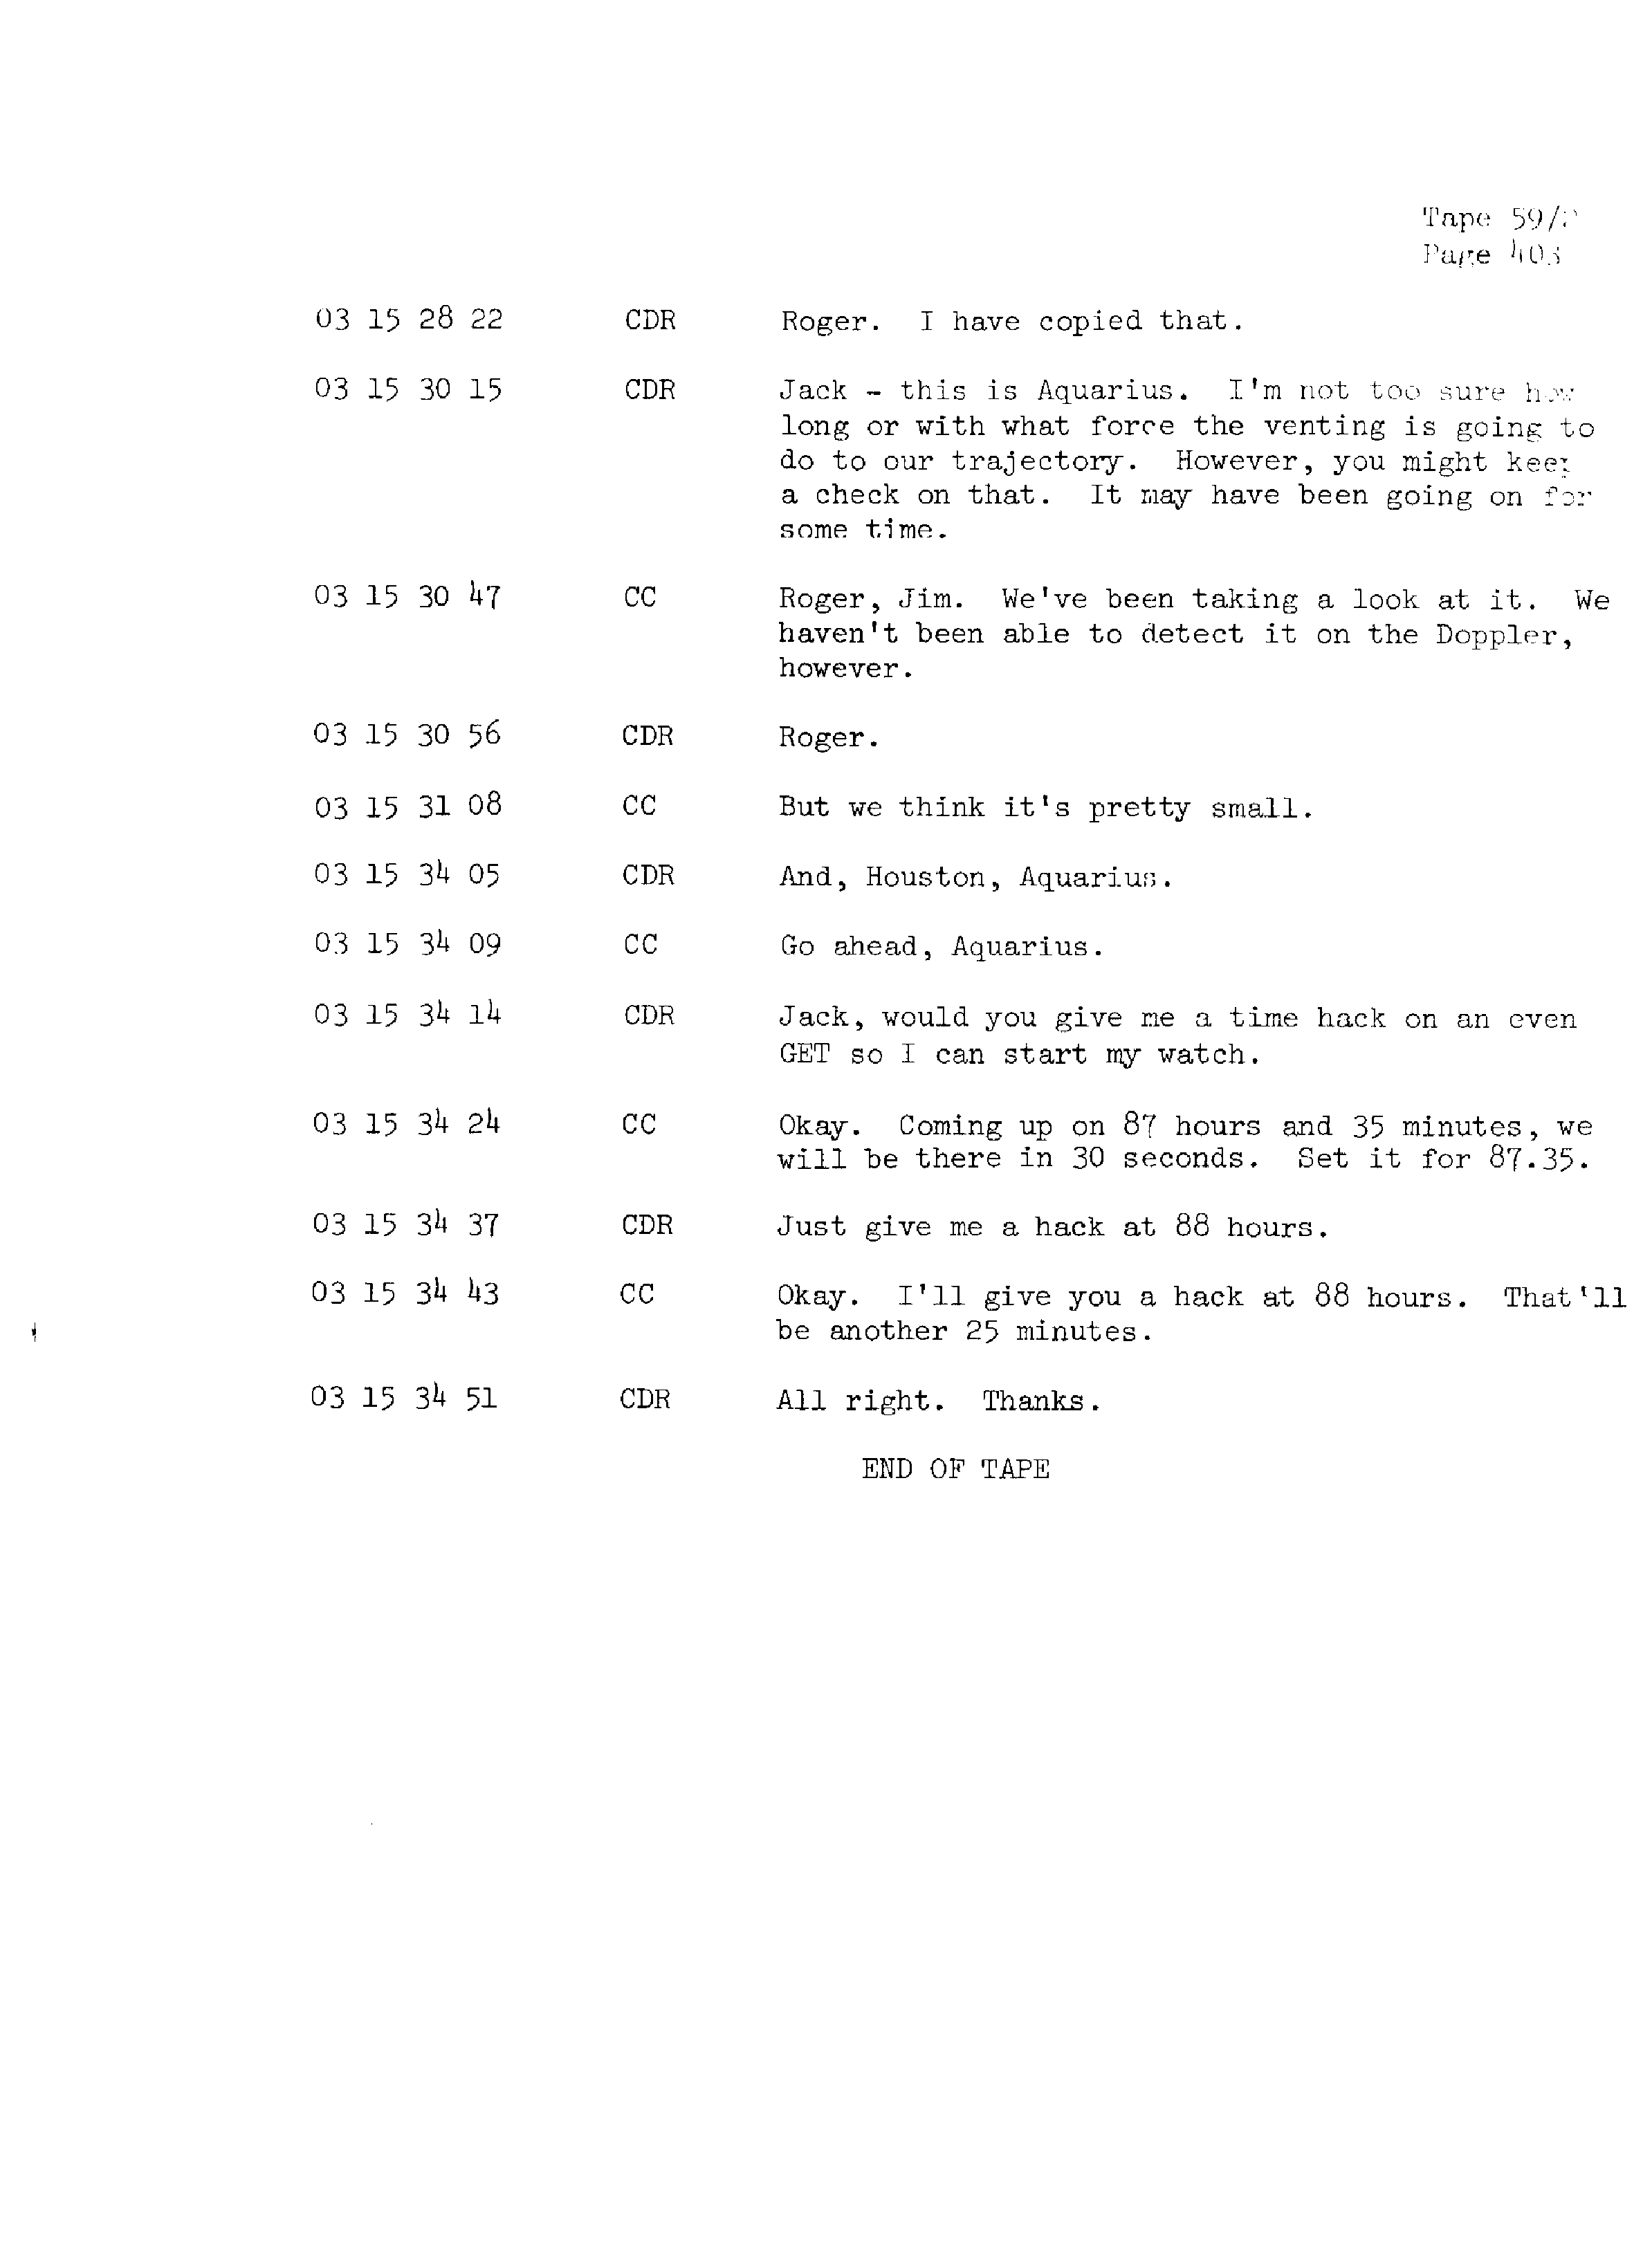 Page 410 of Apollo 13’s original transcript